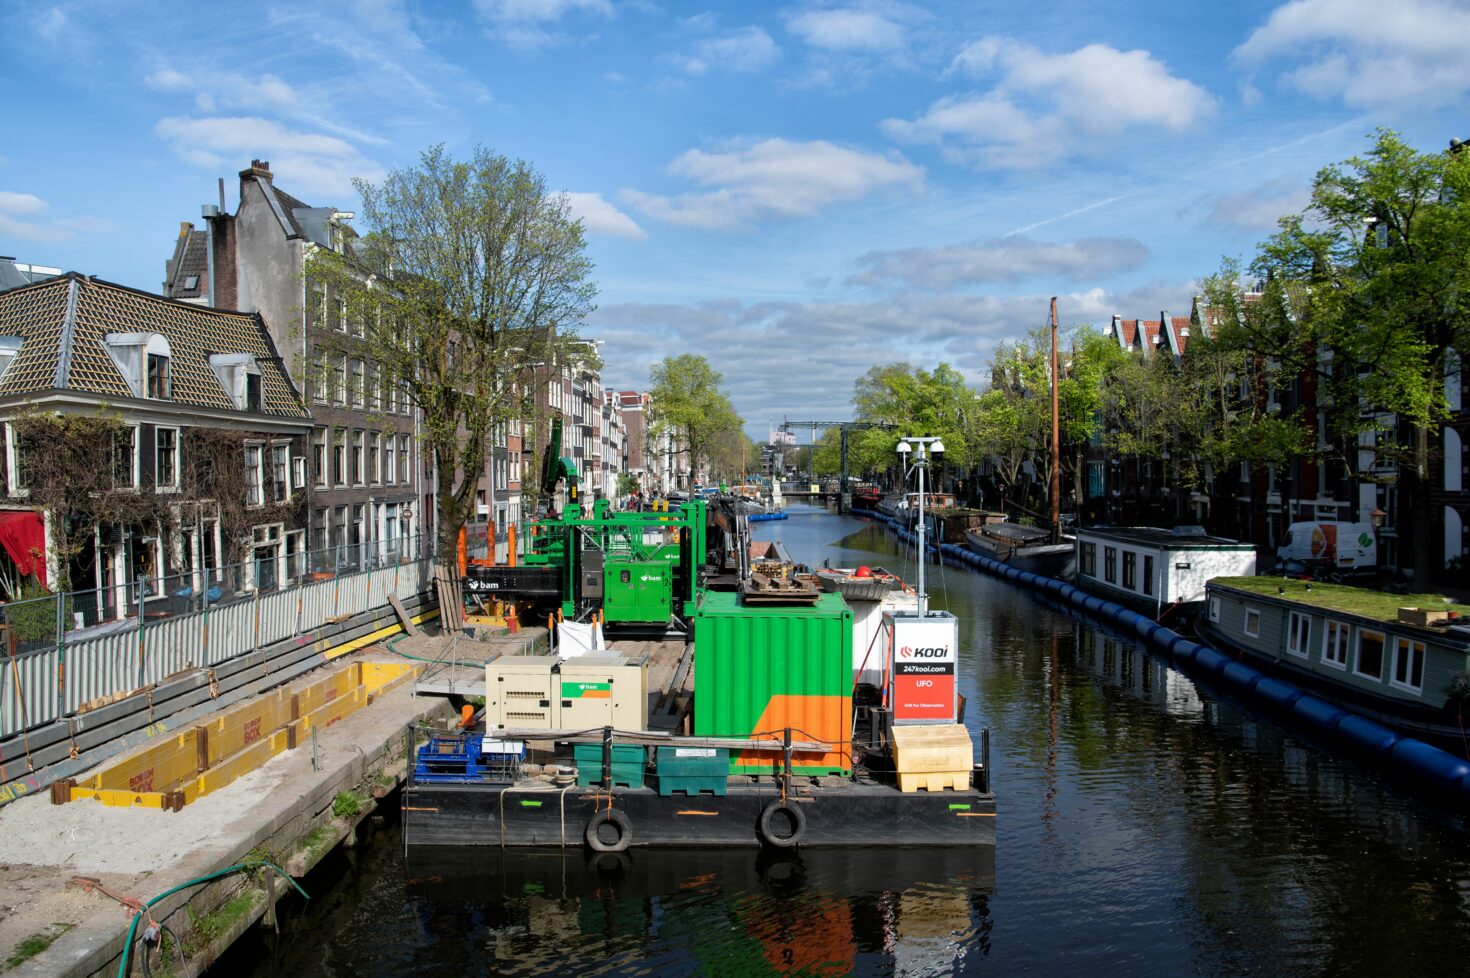 Bouwplaats van Koningsgracht met machines op ponton, sleufkist in de kade en woonboten aan de andere kant achter een ballenlijn. De vaarweg is open.